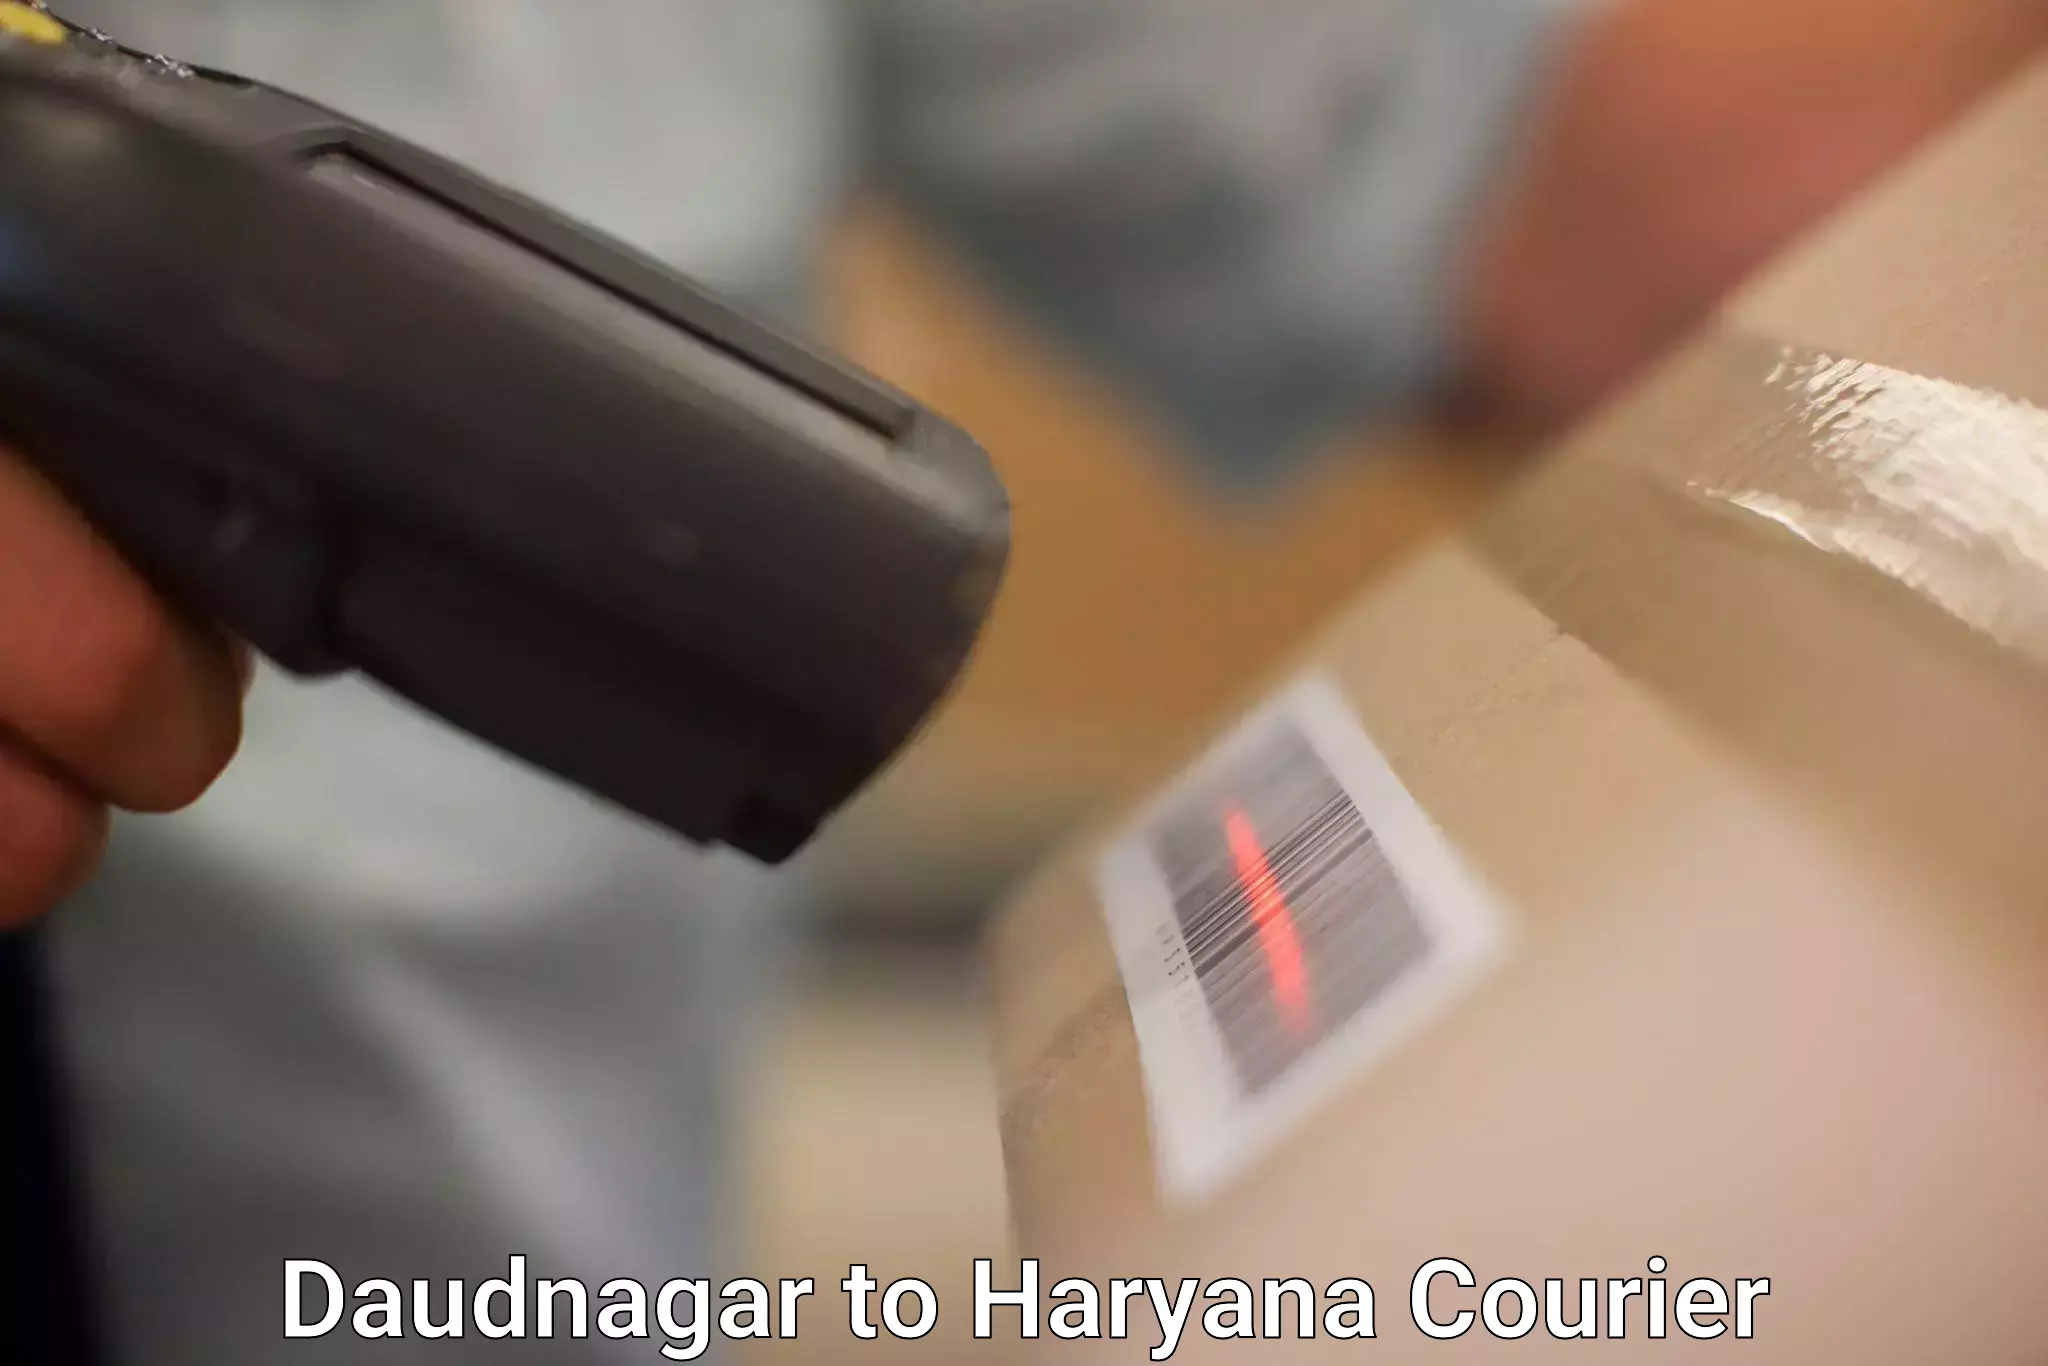 Shipping and handling Daudnagar to Sonipat